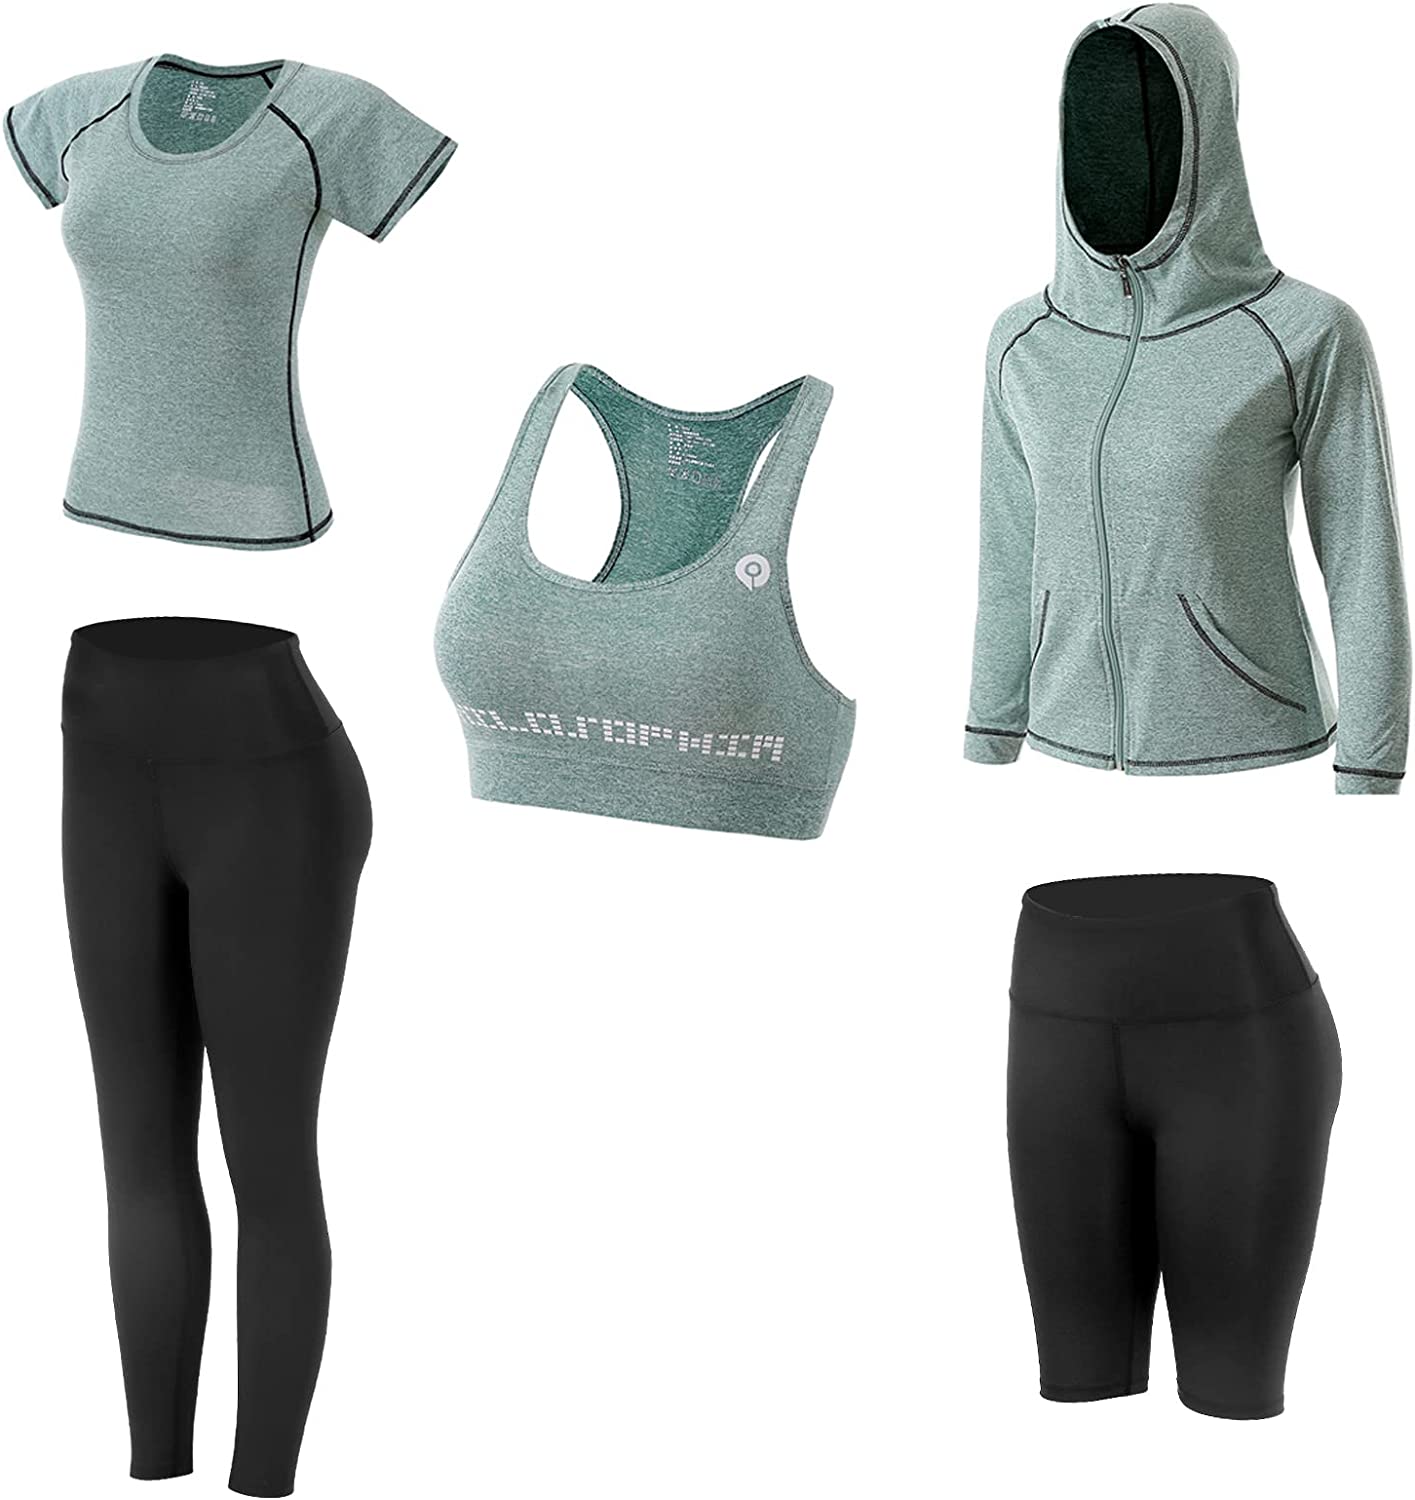  5 PCS Workout Sets for Women, Exercise Wokrout Clothes